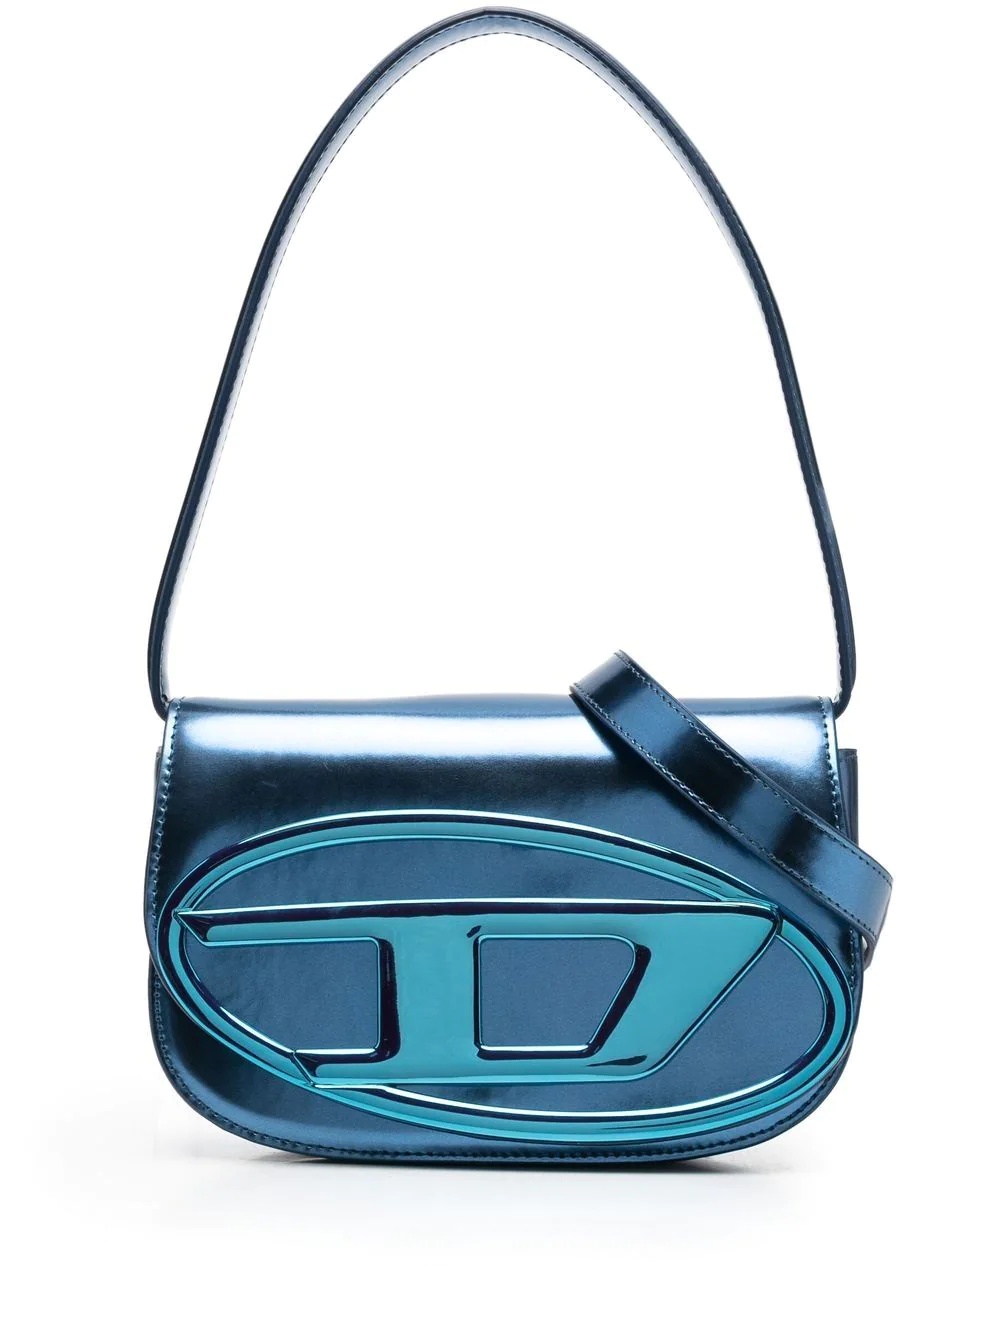 1DR metallic shoulder bag - 1